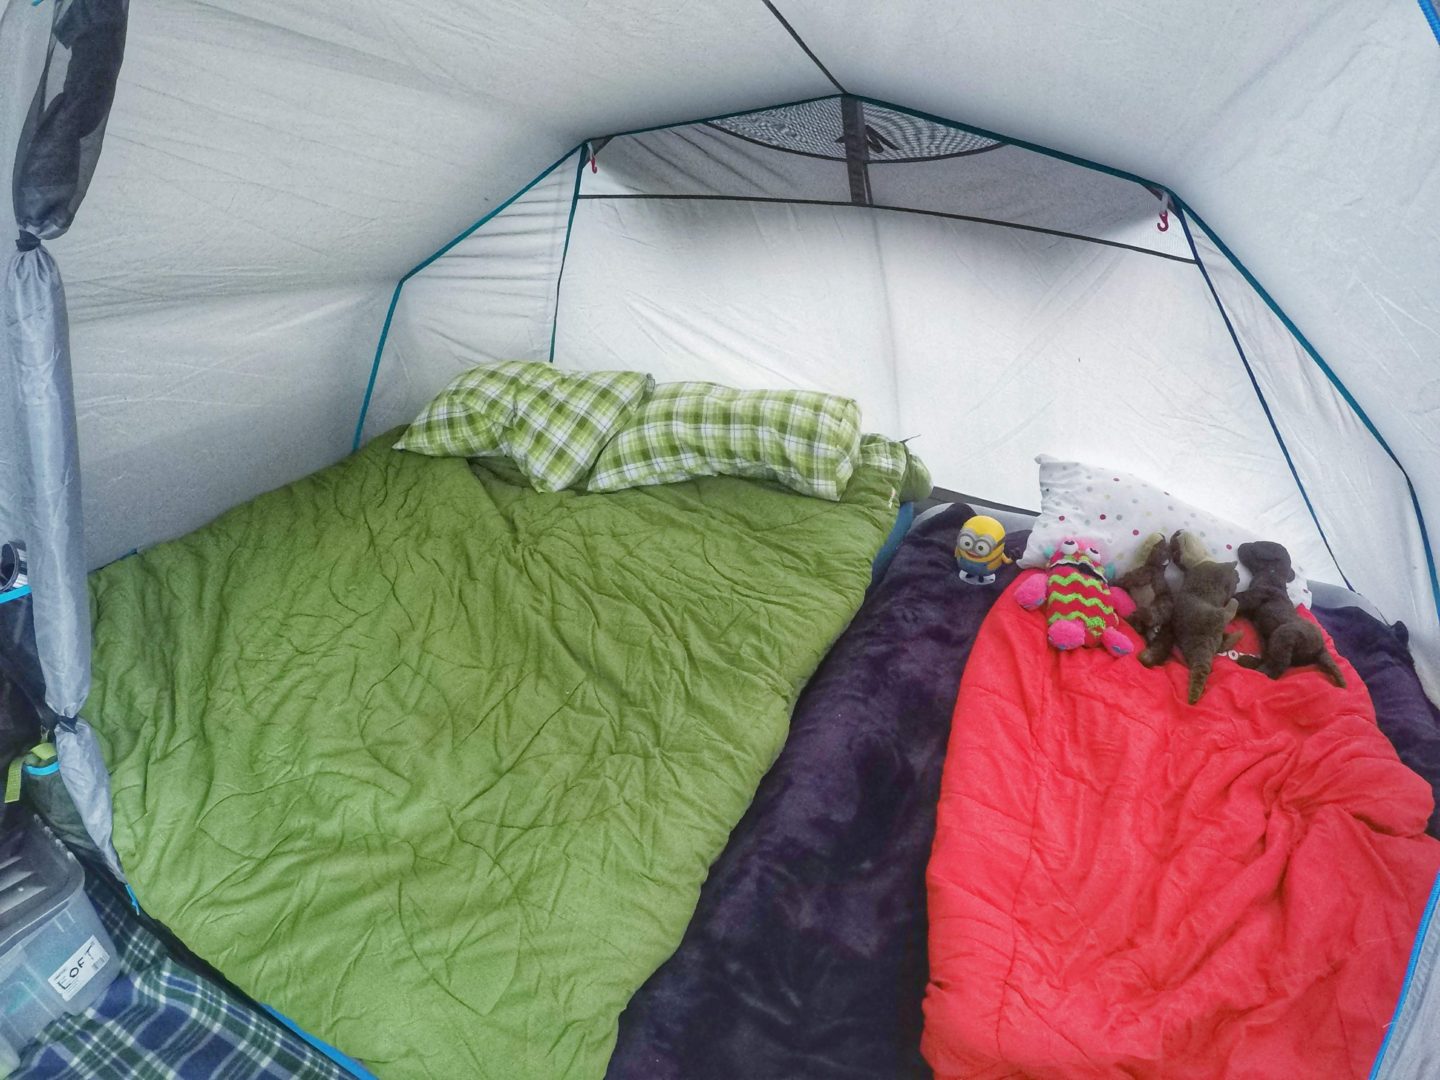 quechua inflatable tent